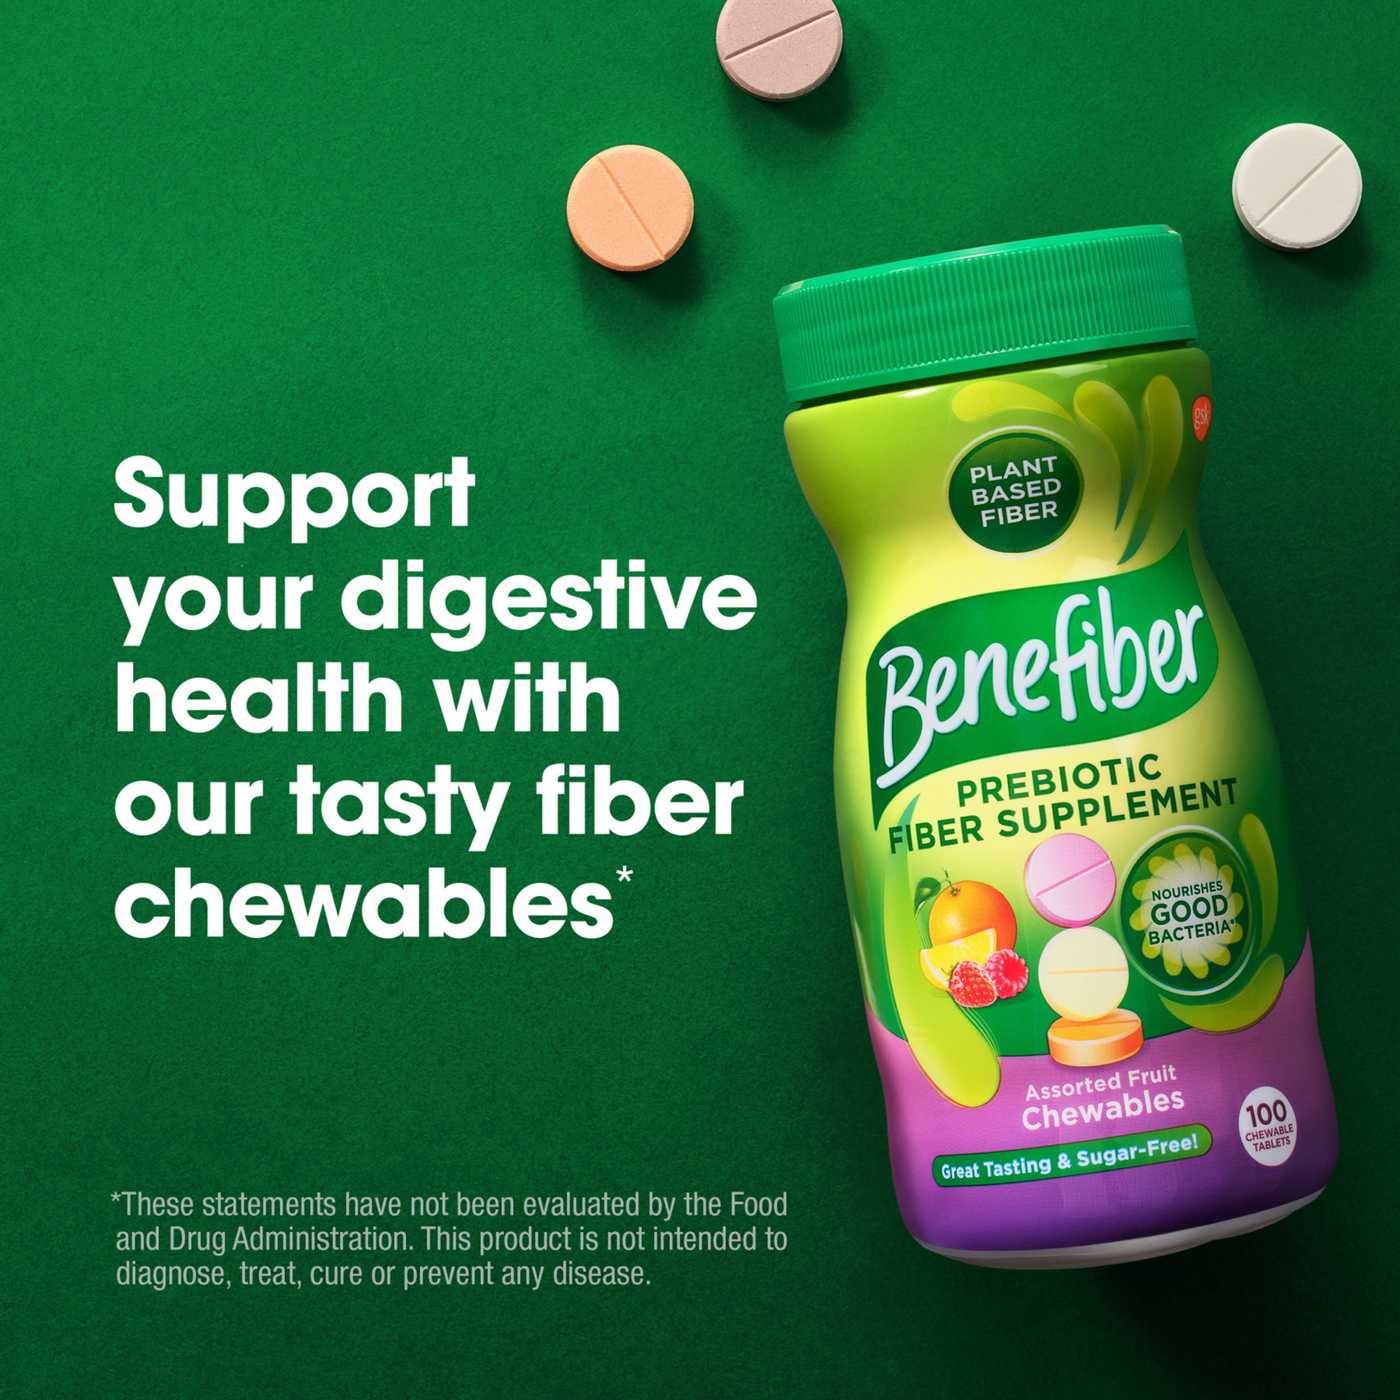 Benefiber Prebiotic Fiber Supplement Chewable Assorted Fruit; image 3 of 9